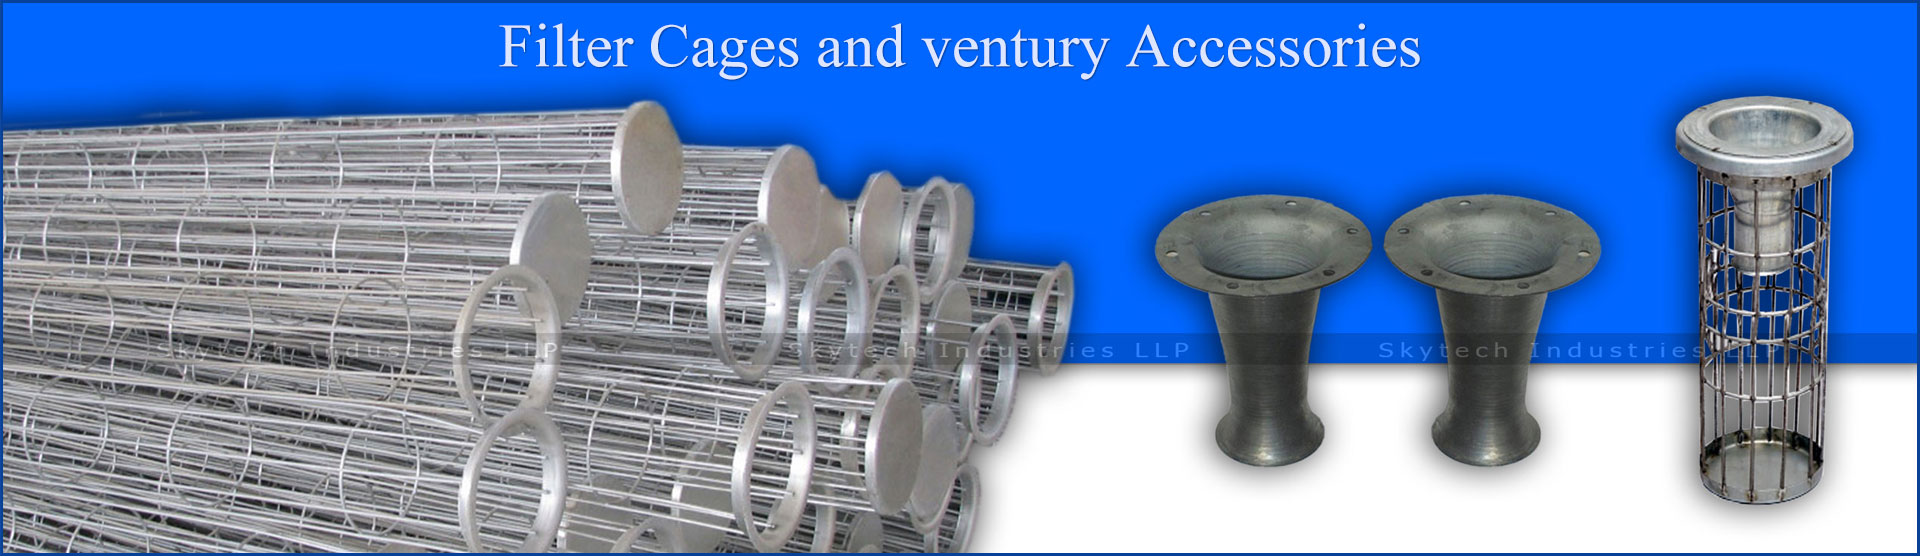 filtercages-ventury-accessories